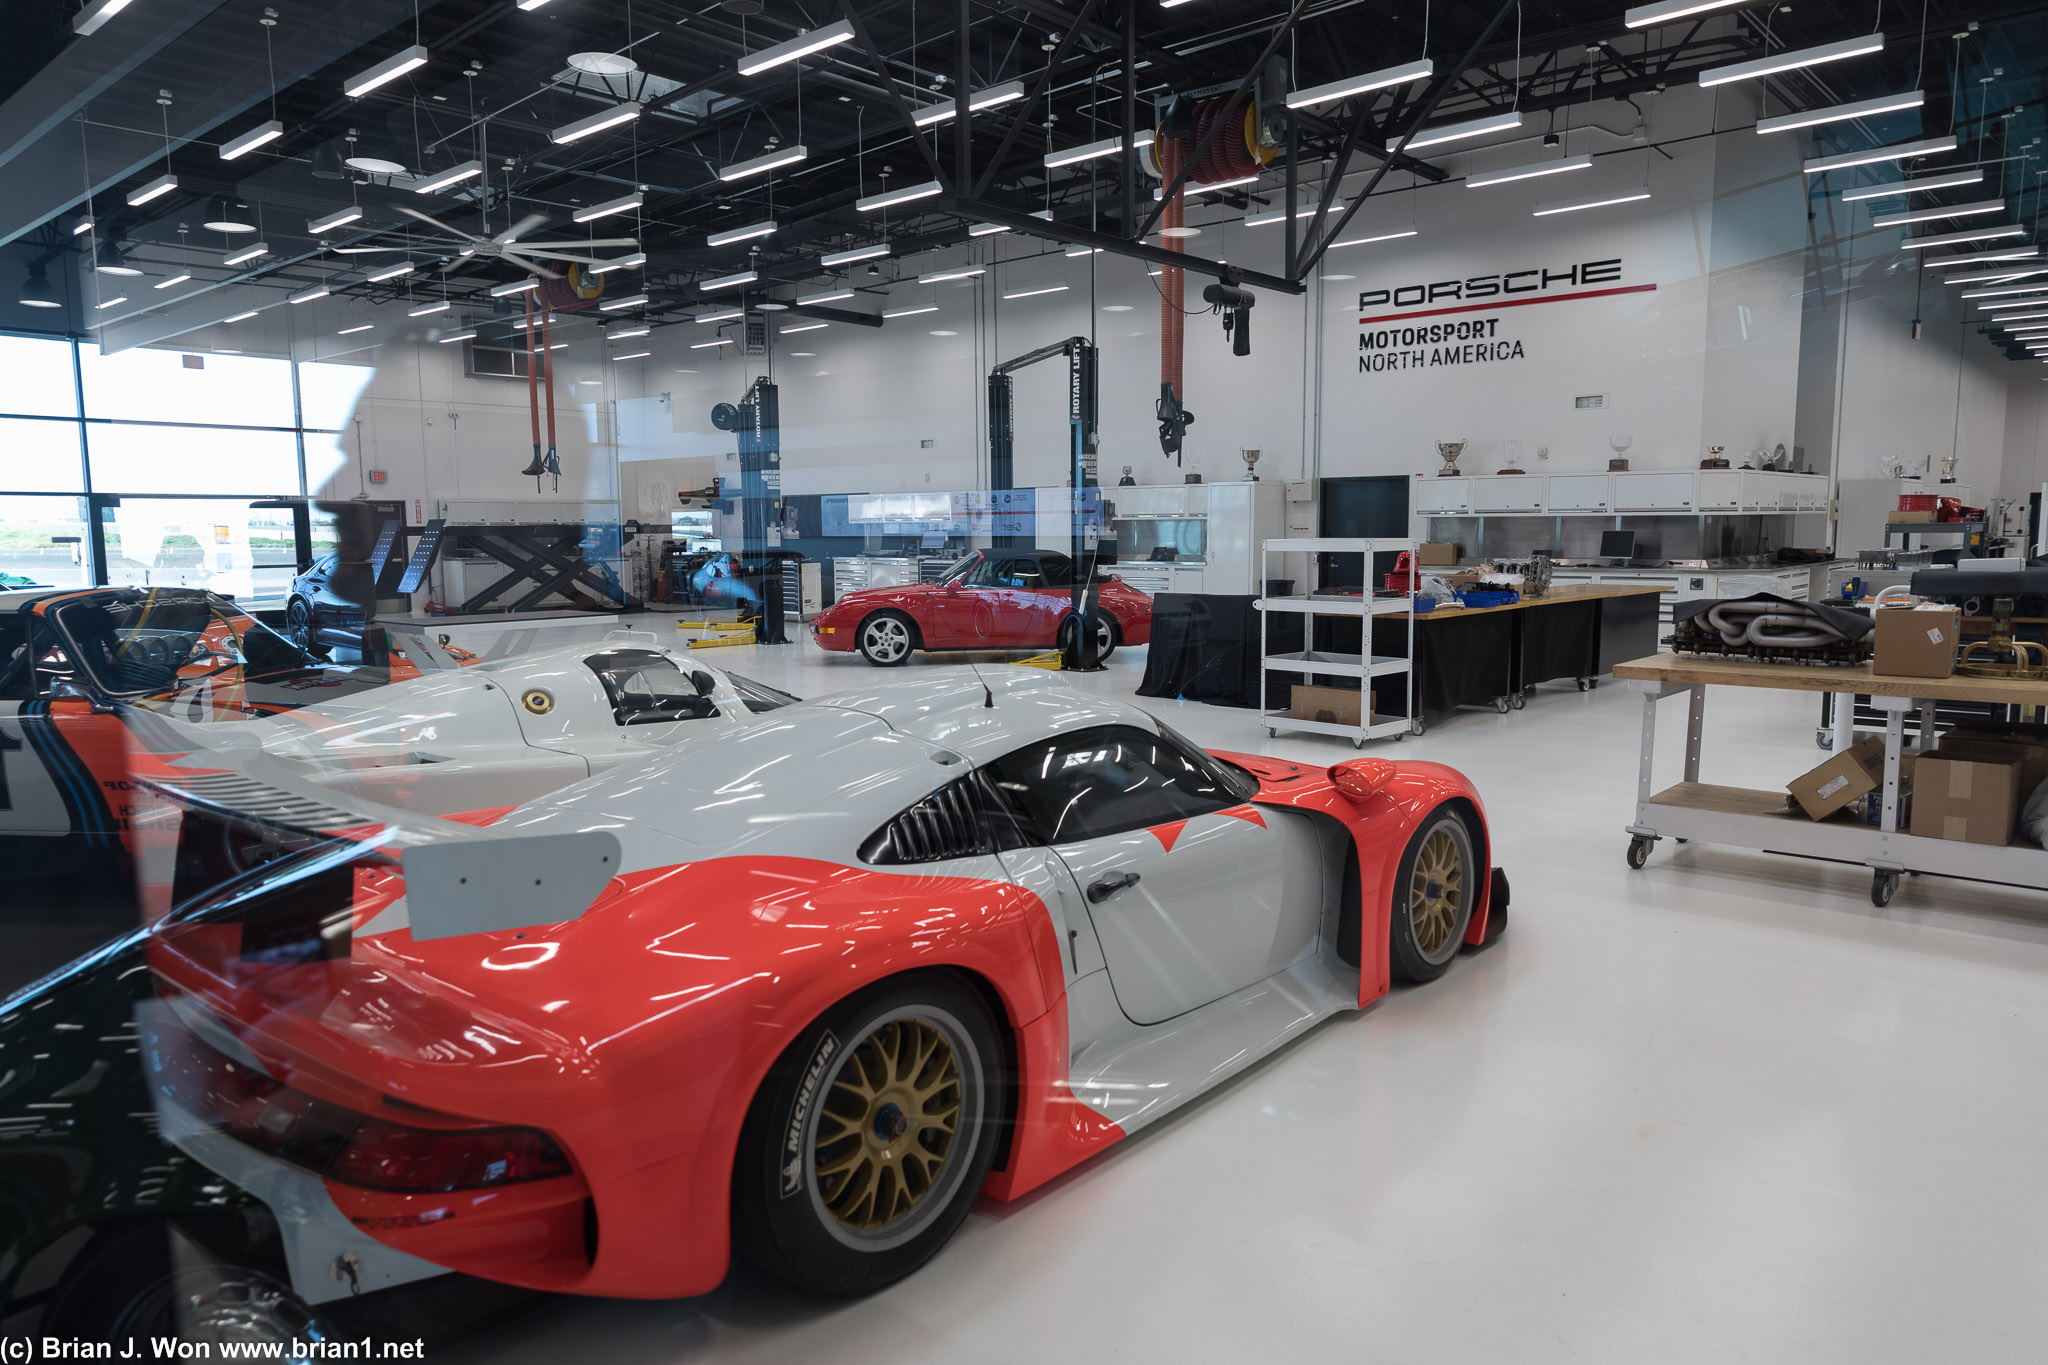 Porsche 911 GT1 inside Porsche Motorsport North America.